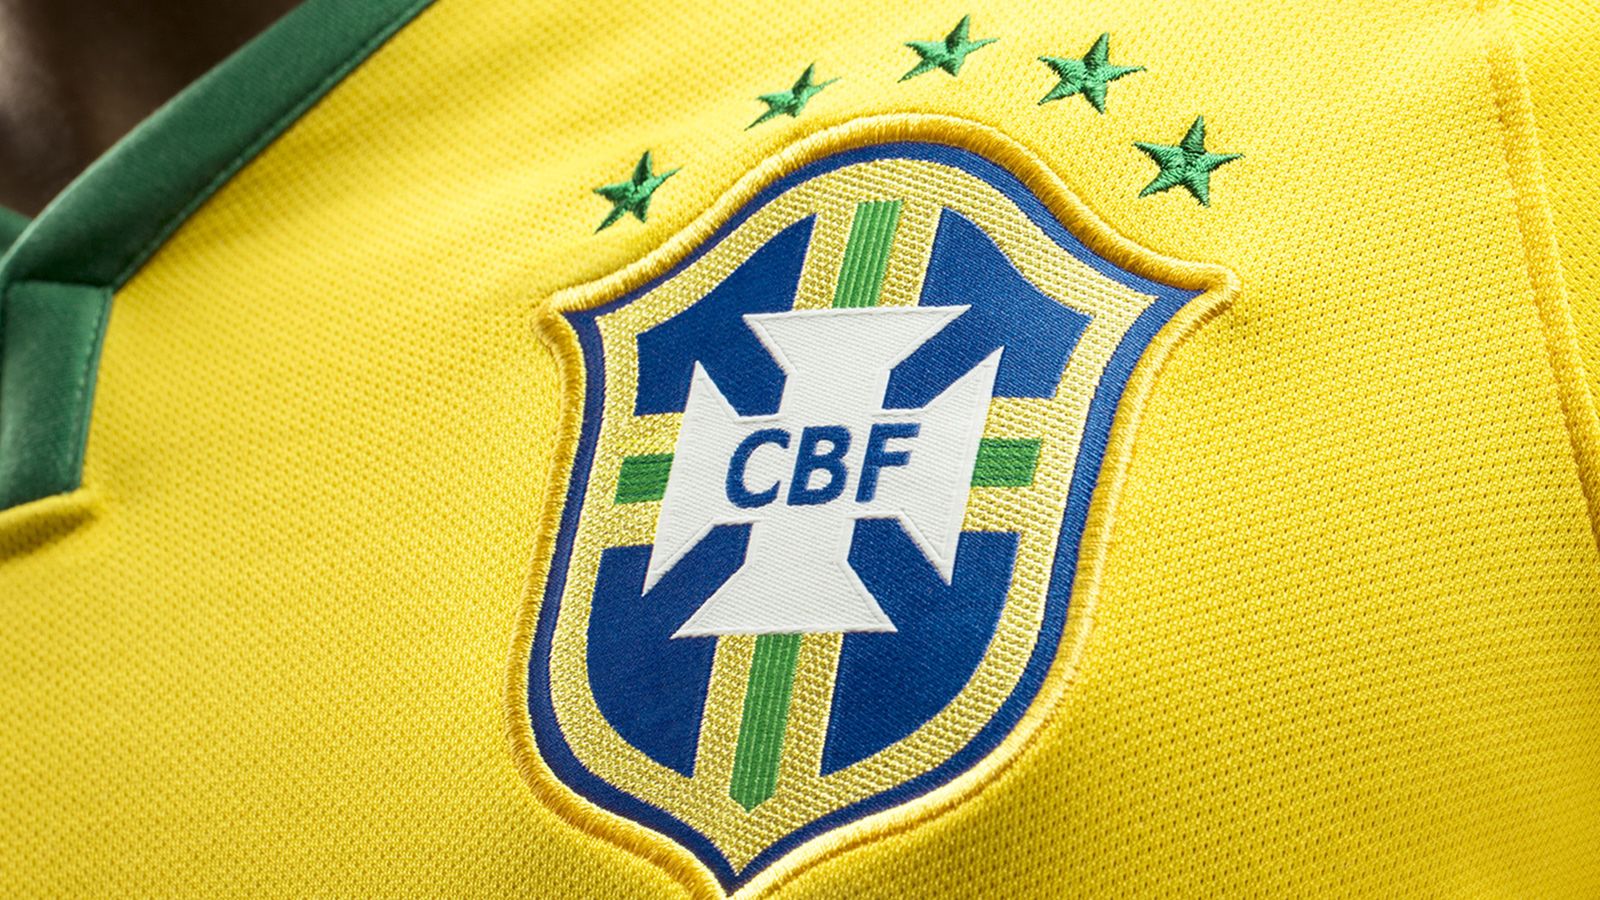 Calaméo - Regras Oficiais de Futebol CBF/FIFA